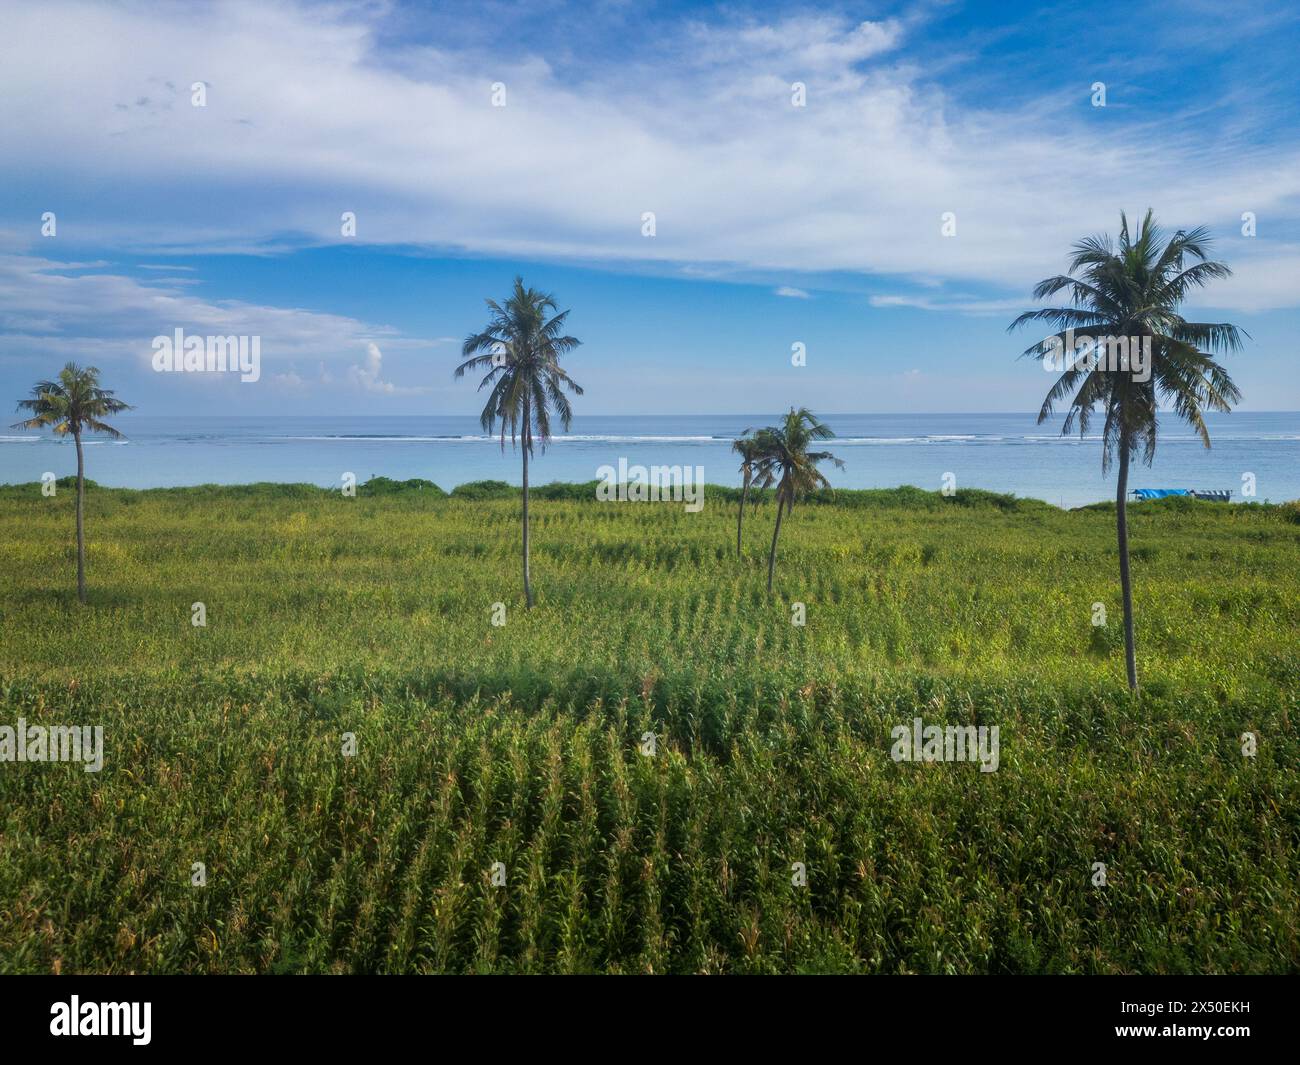 Palmiers poussant dans une rizière en terrasses en bord de mer, Lombok, Indonésie Banque D'Images